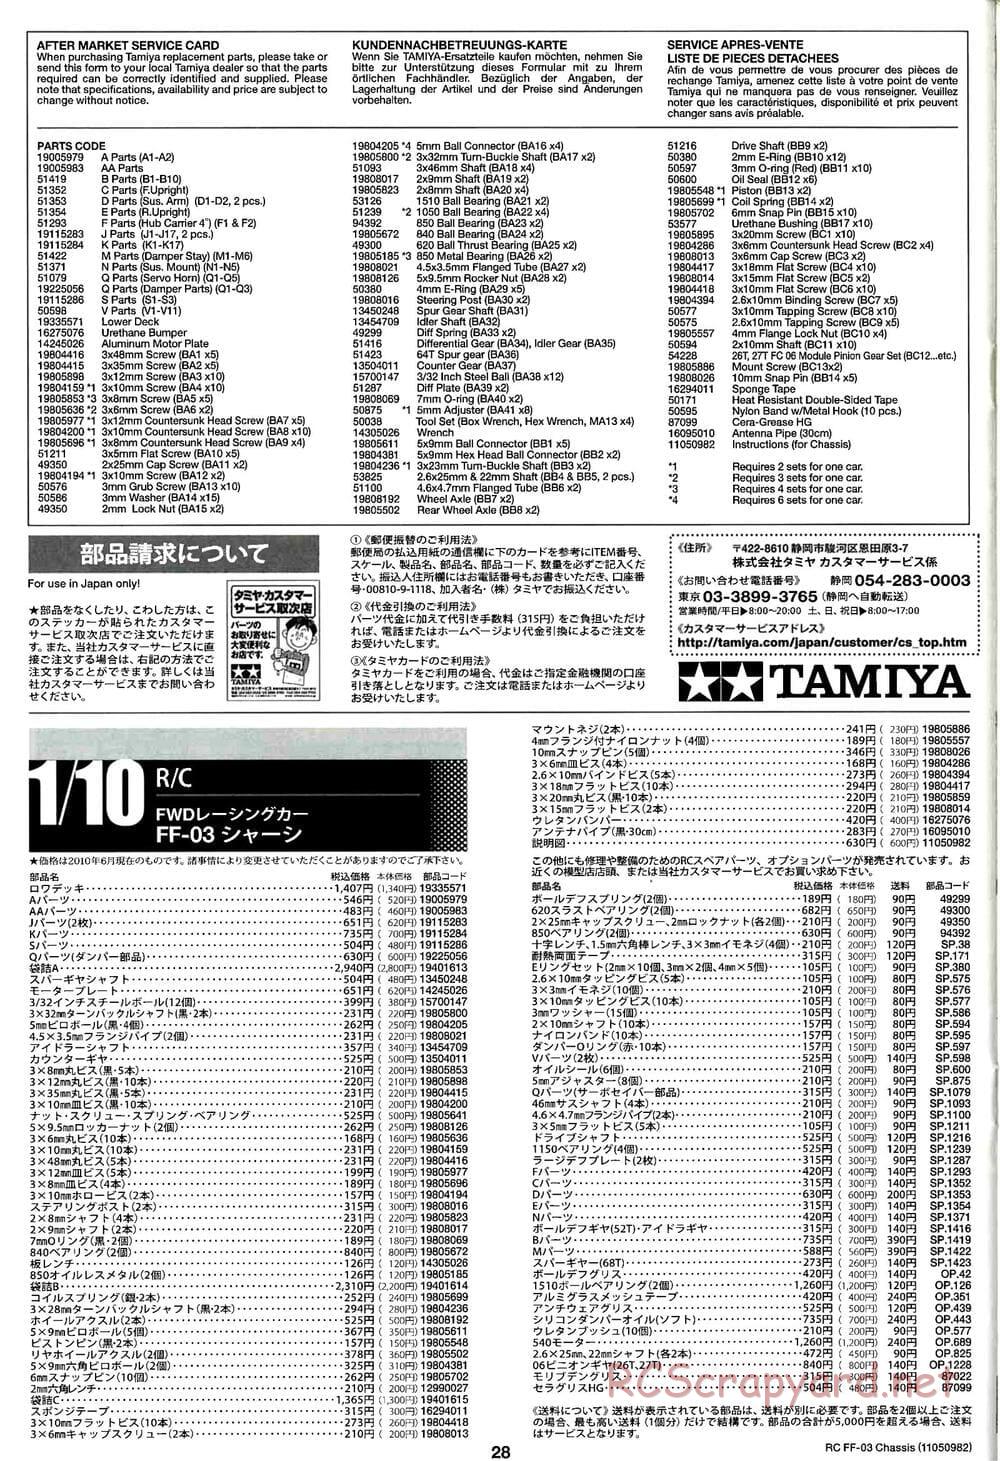 Tamiya - Honda Accord Aero Custom - FF-03 Chassis - Manual - Page 28